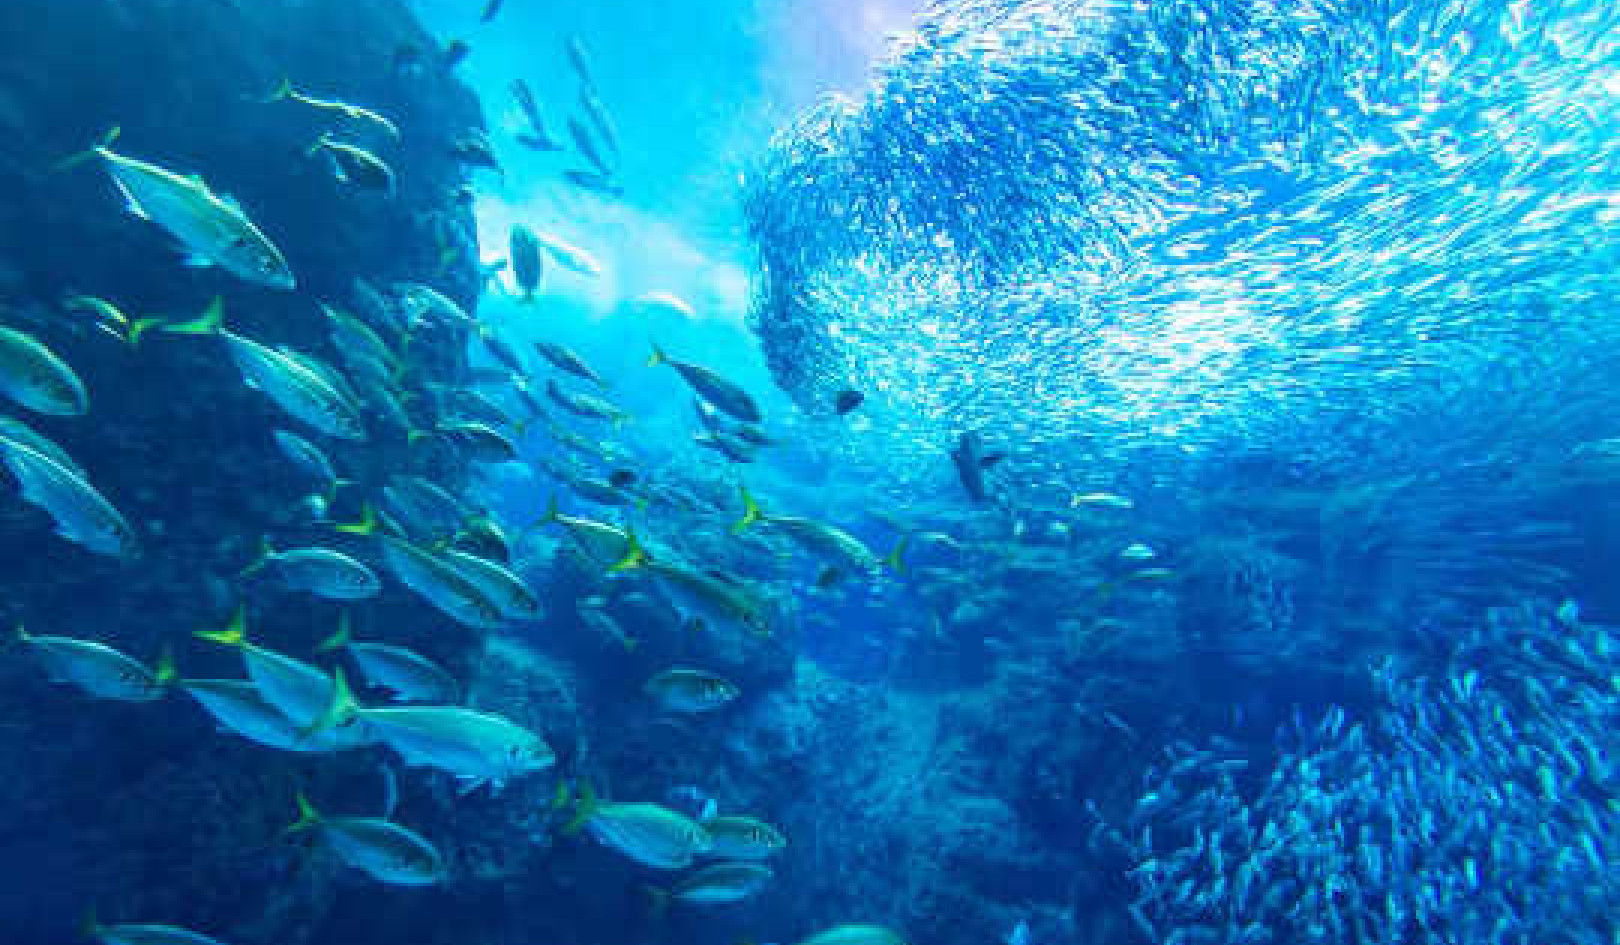 Az óceán egészsége a közgazdaságtantól és az Infinity Fish gondolatától függ